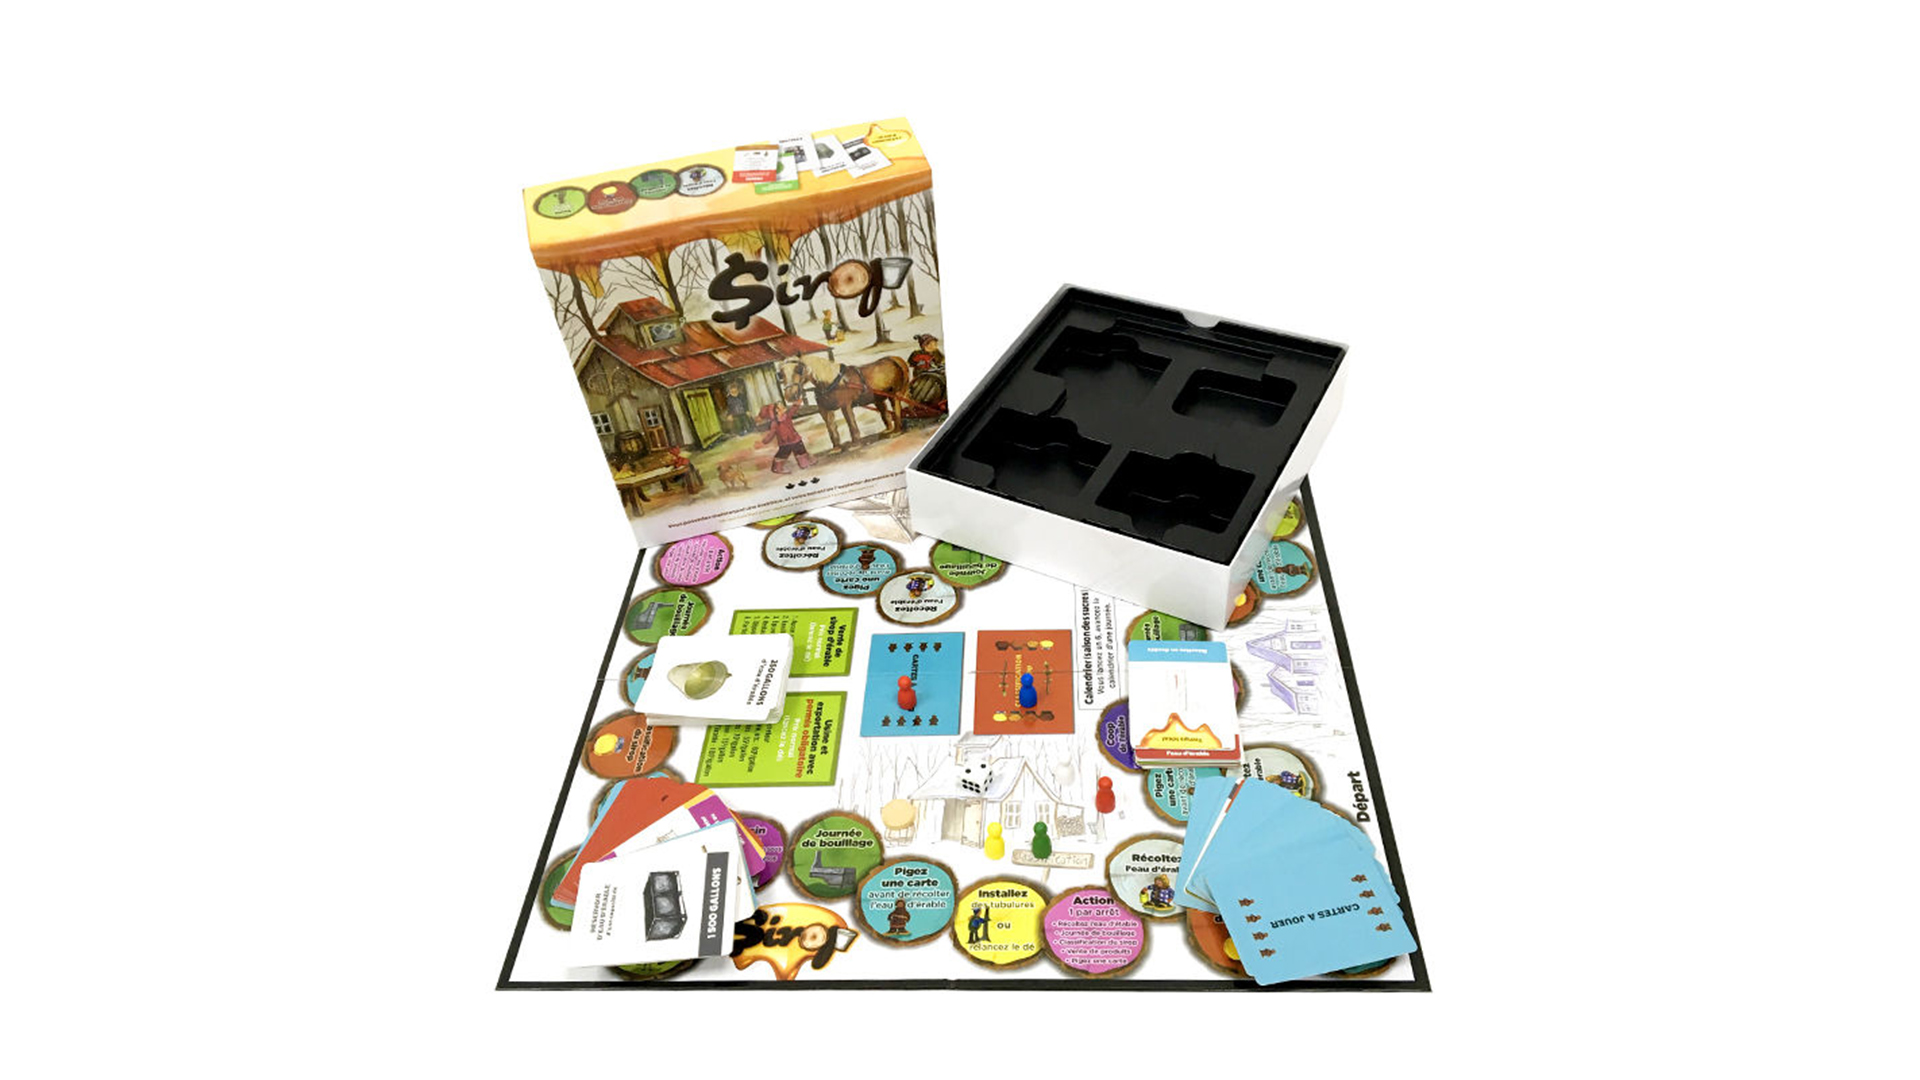 सभी समय के बच्चों के लिए सर्वश्रेष्ठ पारिवारिक बोर्ड गेम इंटरएक्टिव बोर्ड गेम सेट कंपनी - बोर्ड गेम